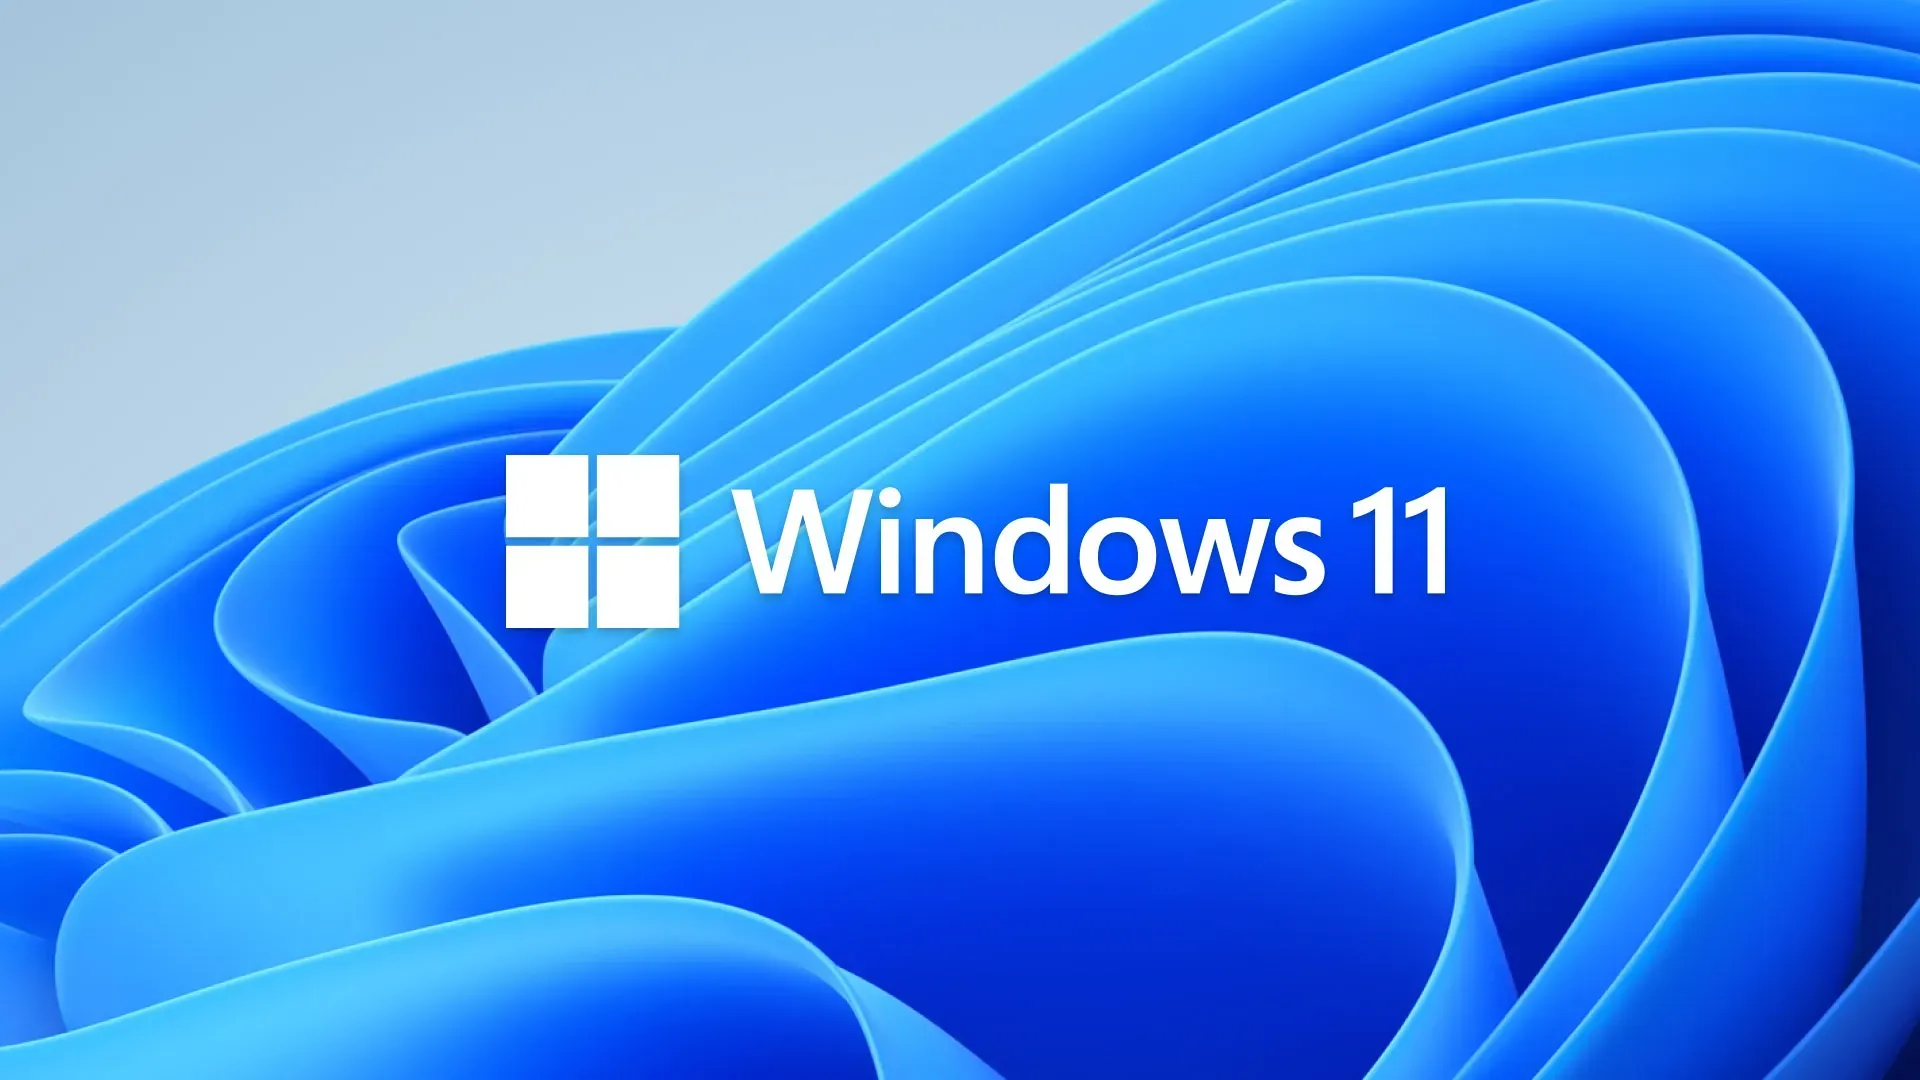 Microsoft Outlook-software voor Windows 11/10 was gevoelig voor “Millennium Bug”-problemen, waardoor gebruikers teruggingen naar 1930.